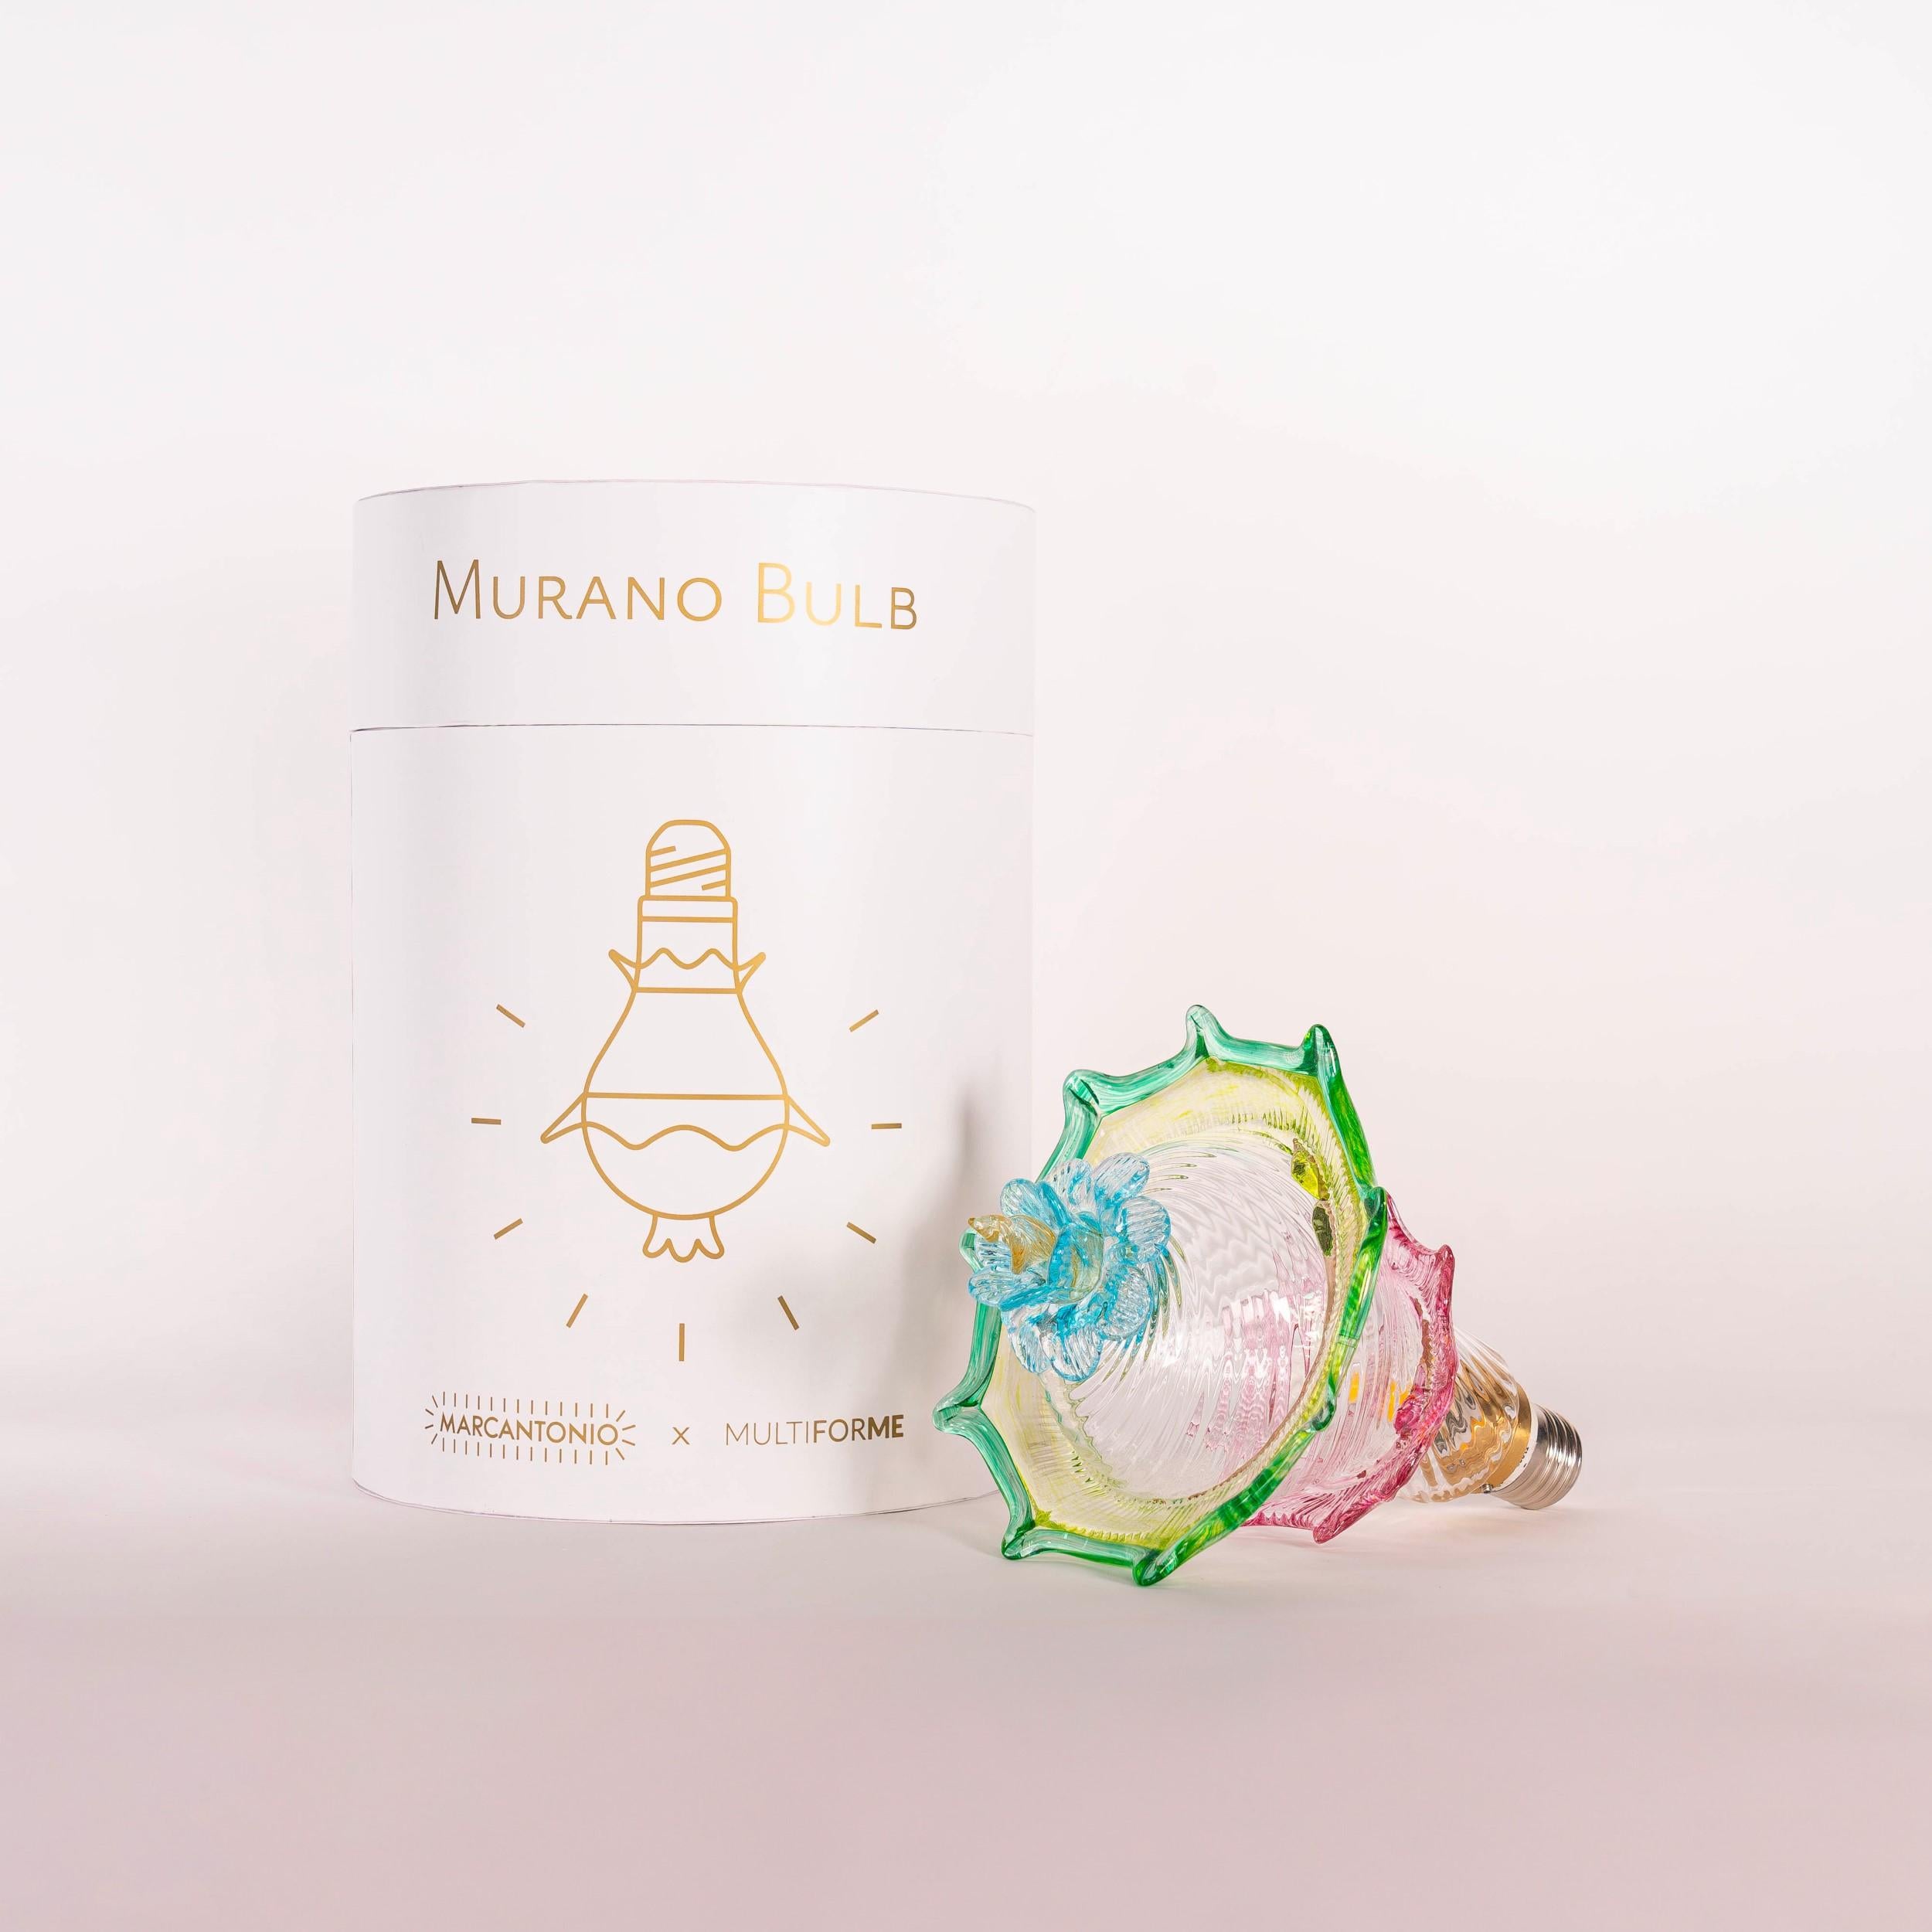 Die Kunst des Murano-Glases trifft auf die Ikonizität einer Glühbirne. Zusammen ergeben sie ein brillantes Möbelstück: eine Glühbirne, einen Kronleuchter oder was immer Sie sich vorstellen können.

Murano Bulb, Ihr Glühbirnen-Moment.

Das von